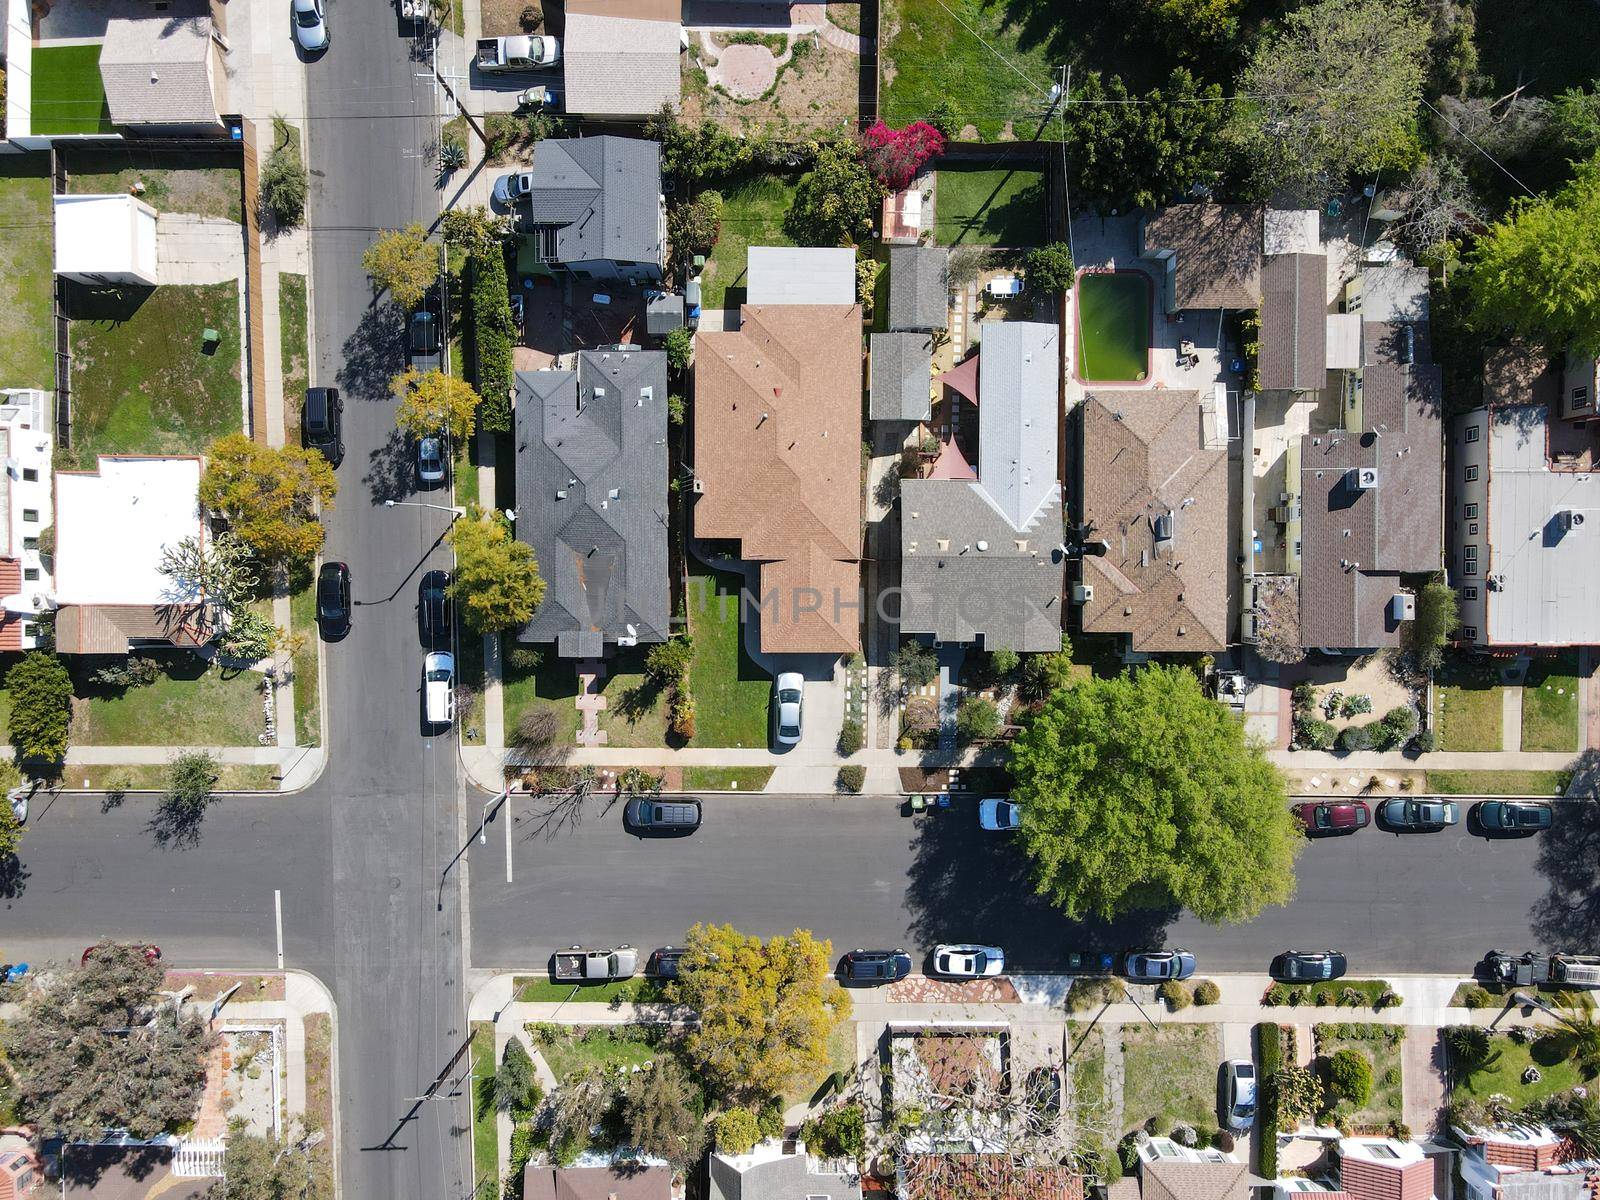 Aerial view above Reynier Village neighborhood in West Los Angeles by Bonandbon